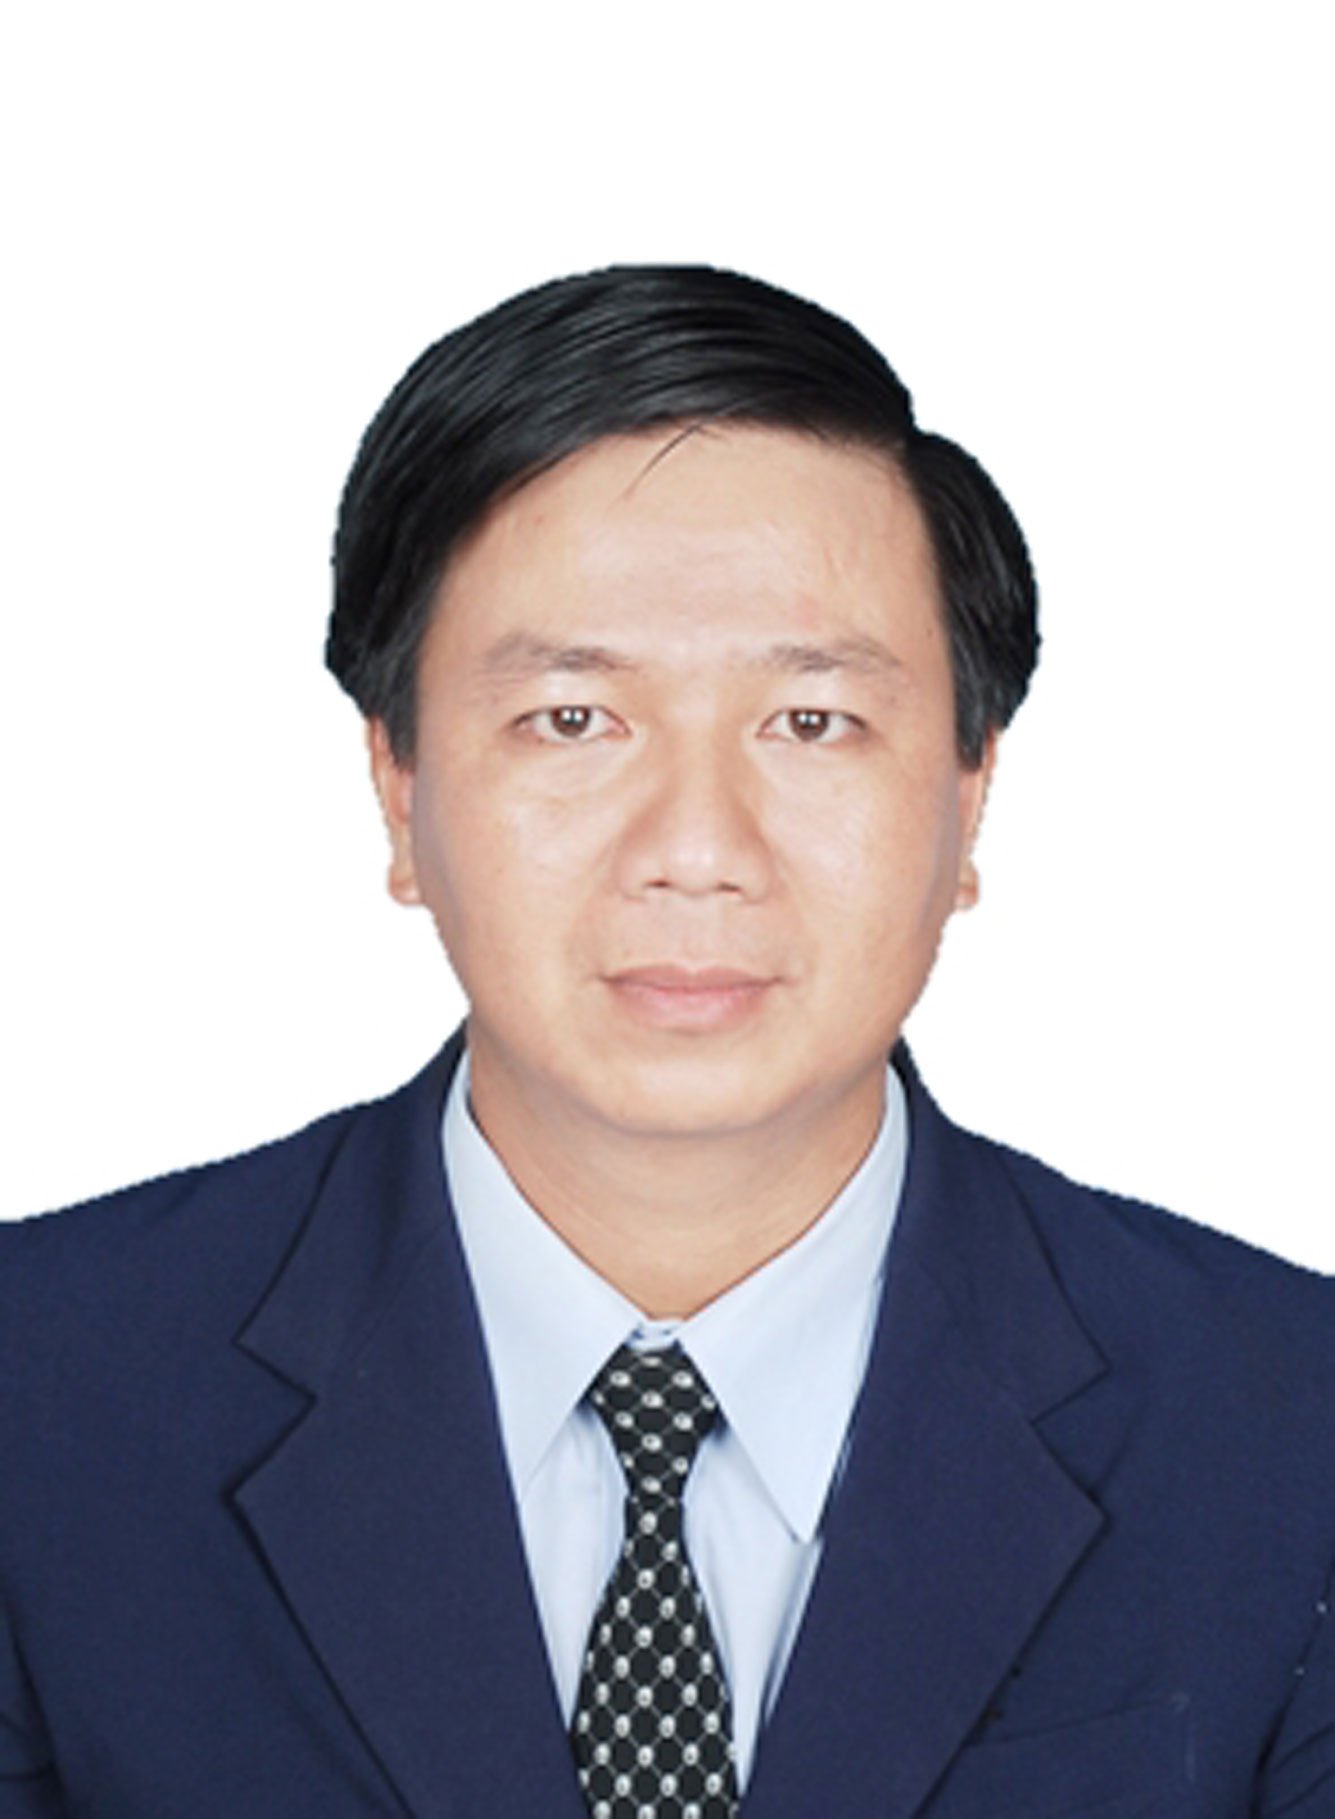 Giám đốc Công ty Điện lực Long An - Lê Hoàng Oanh